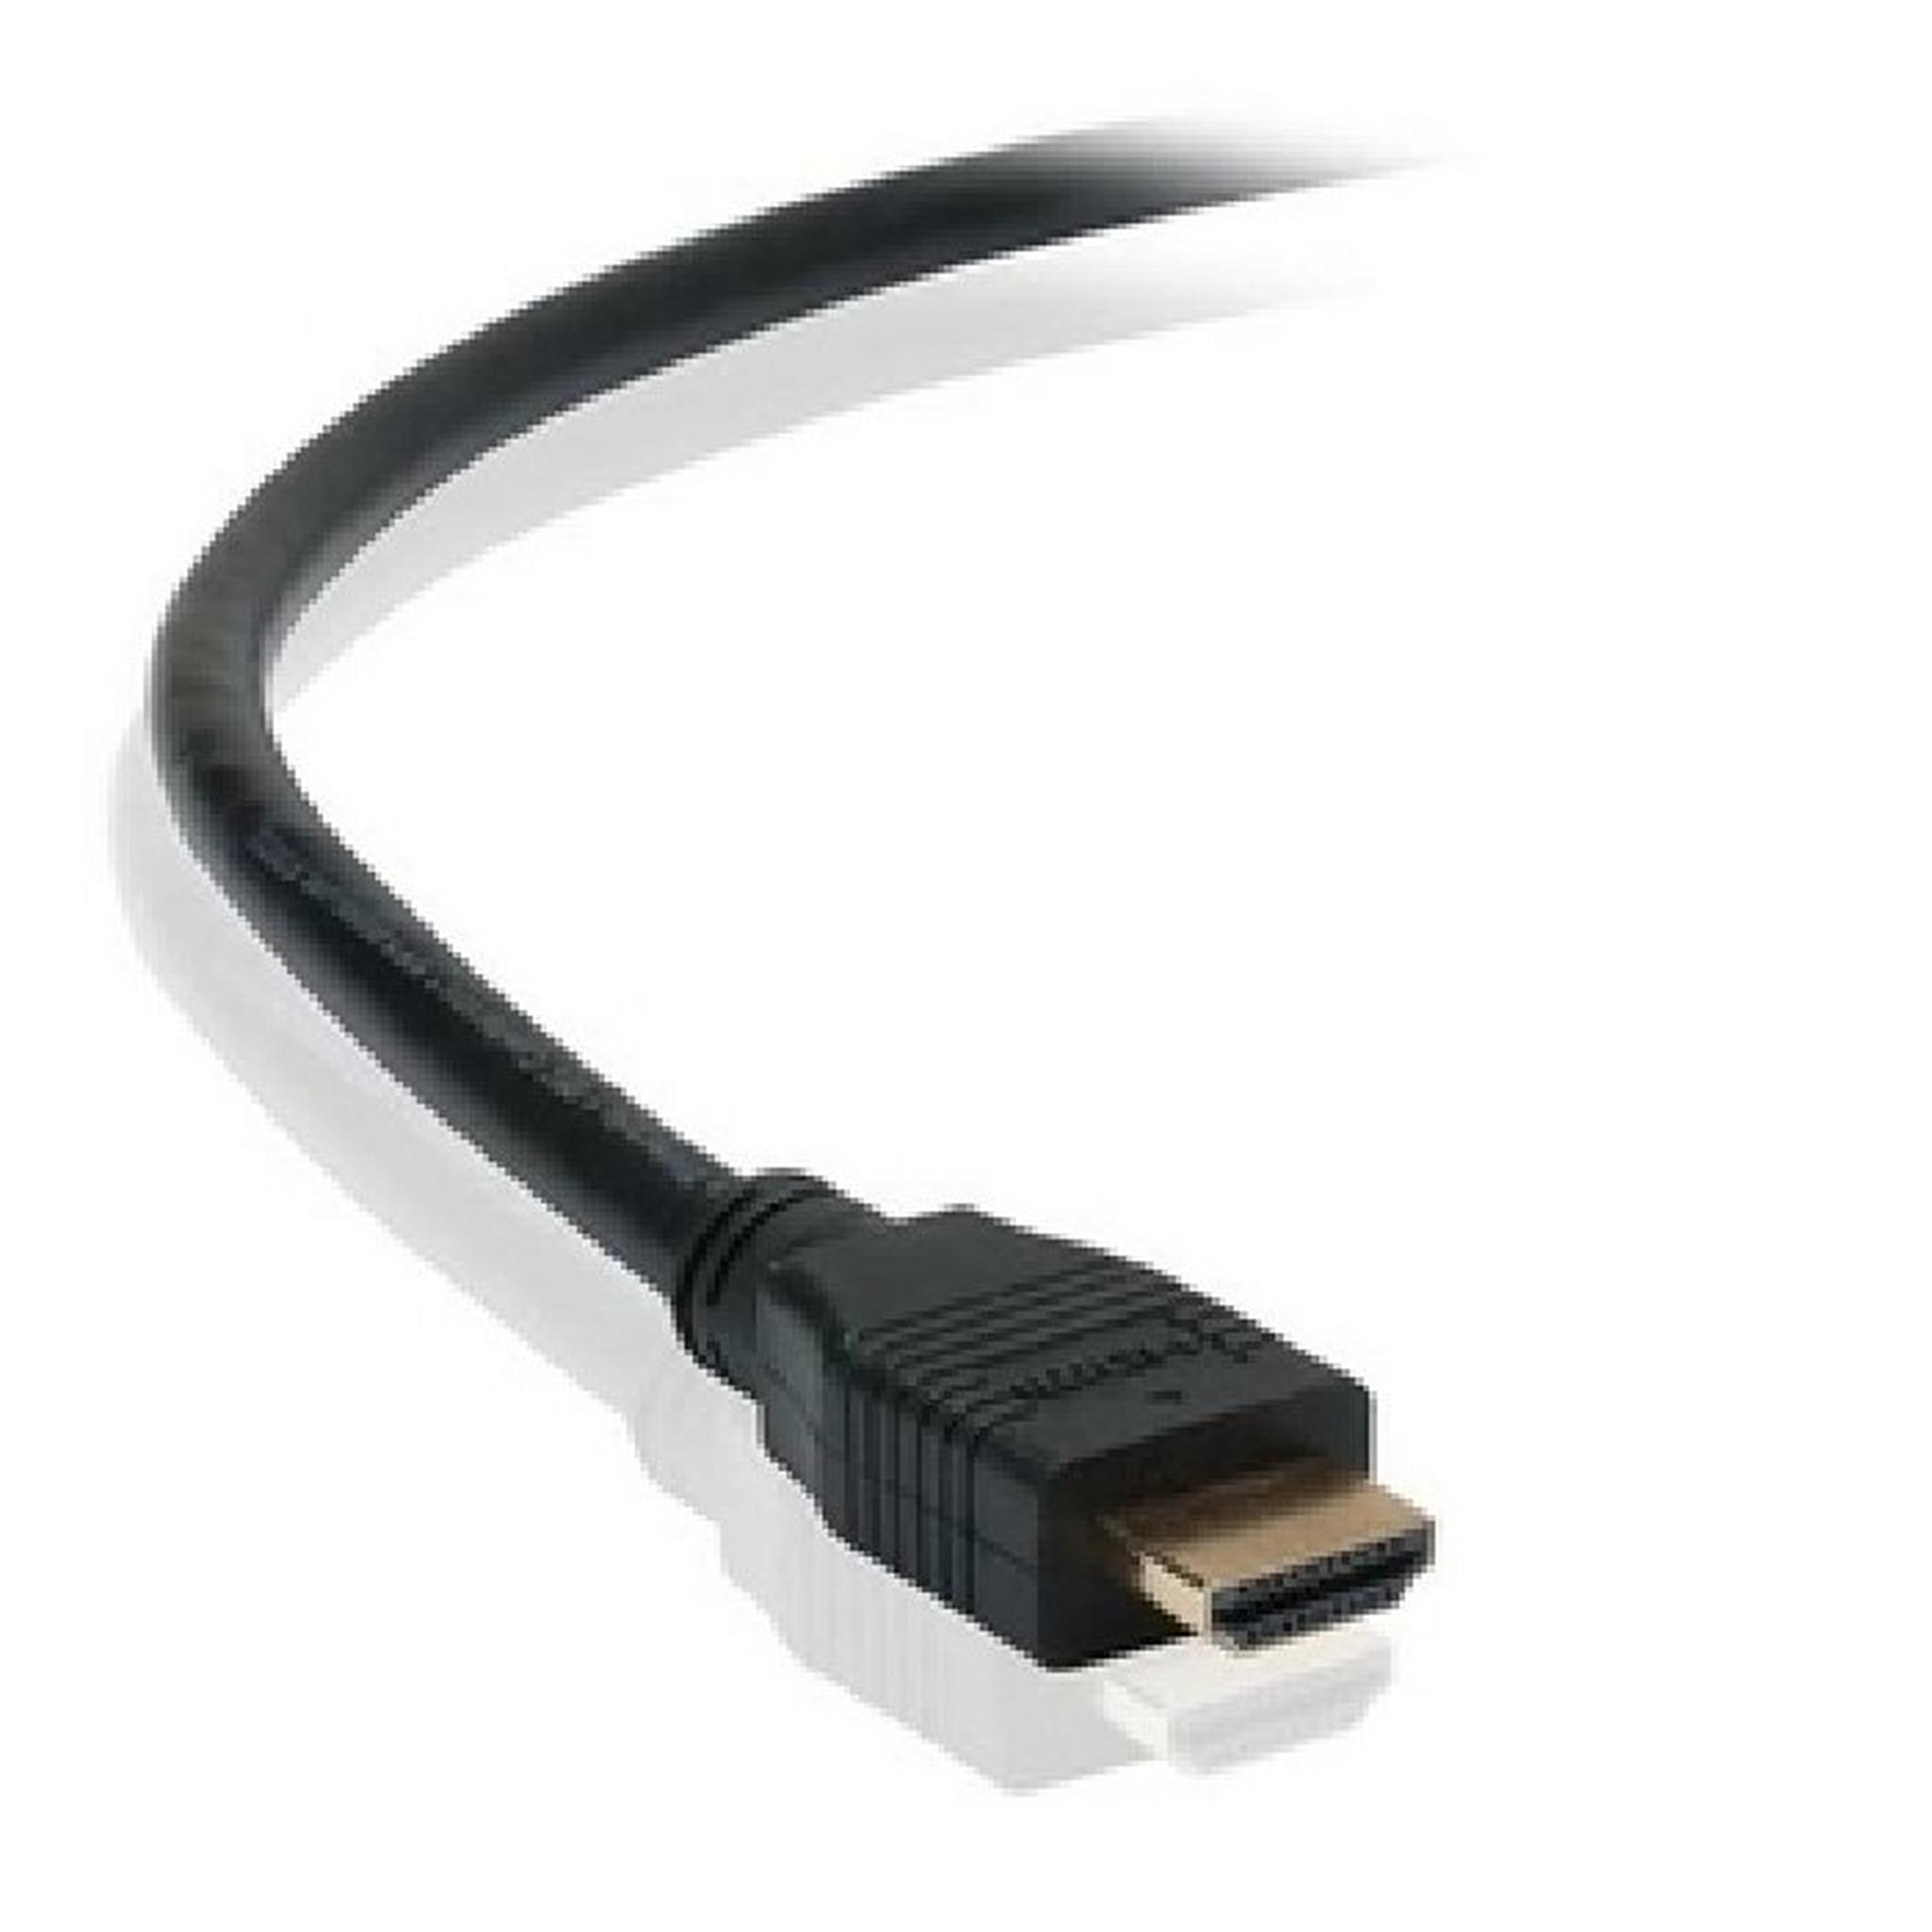 Belkin HDMI to HDMI 5-Meters Cable (F3Y017bt5M) - Black